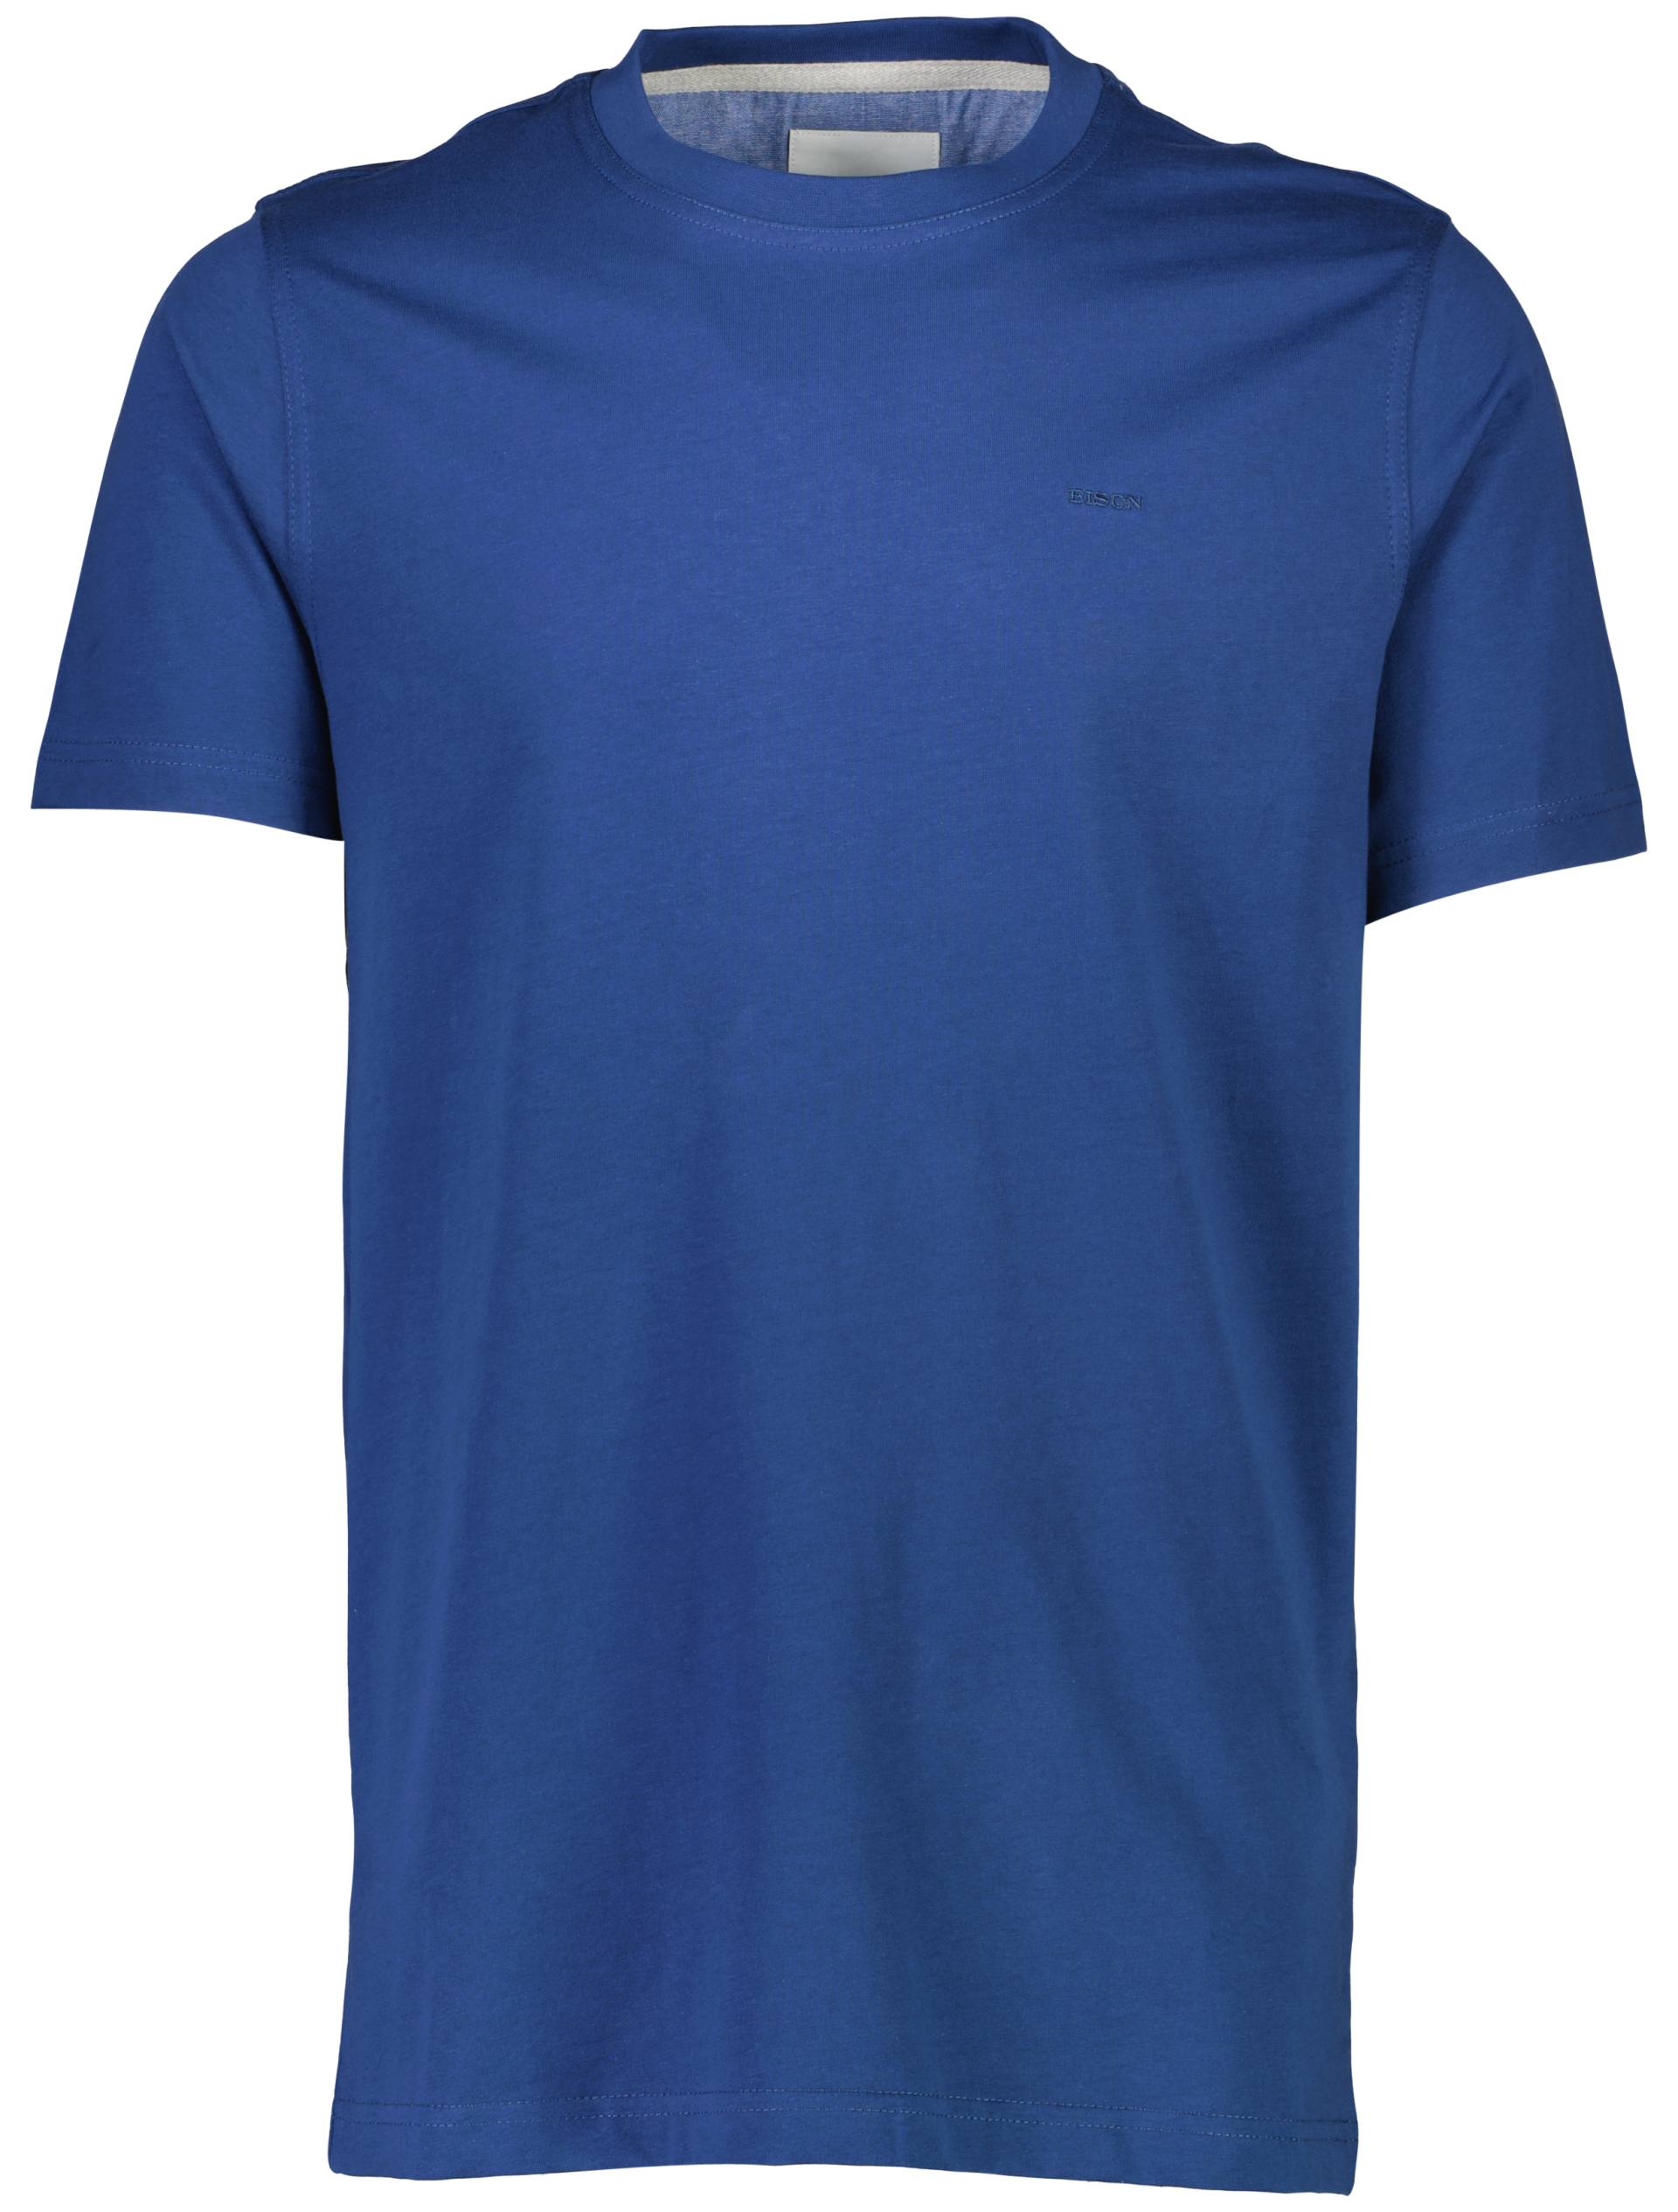 Bison T-shirt blå / dk blue 223